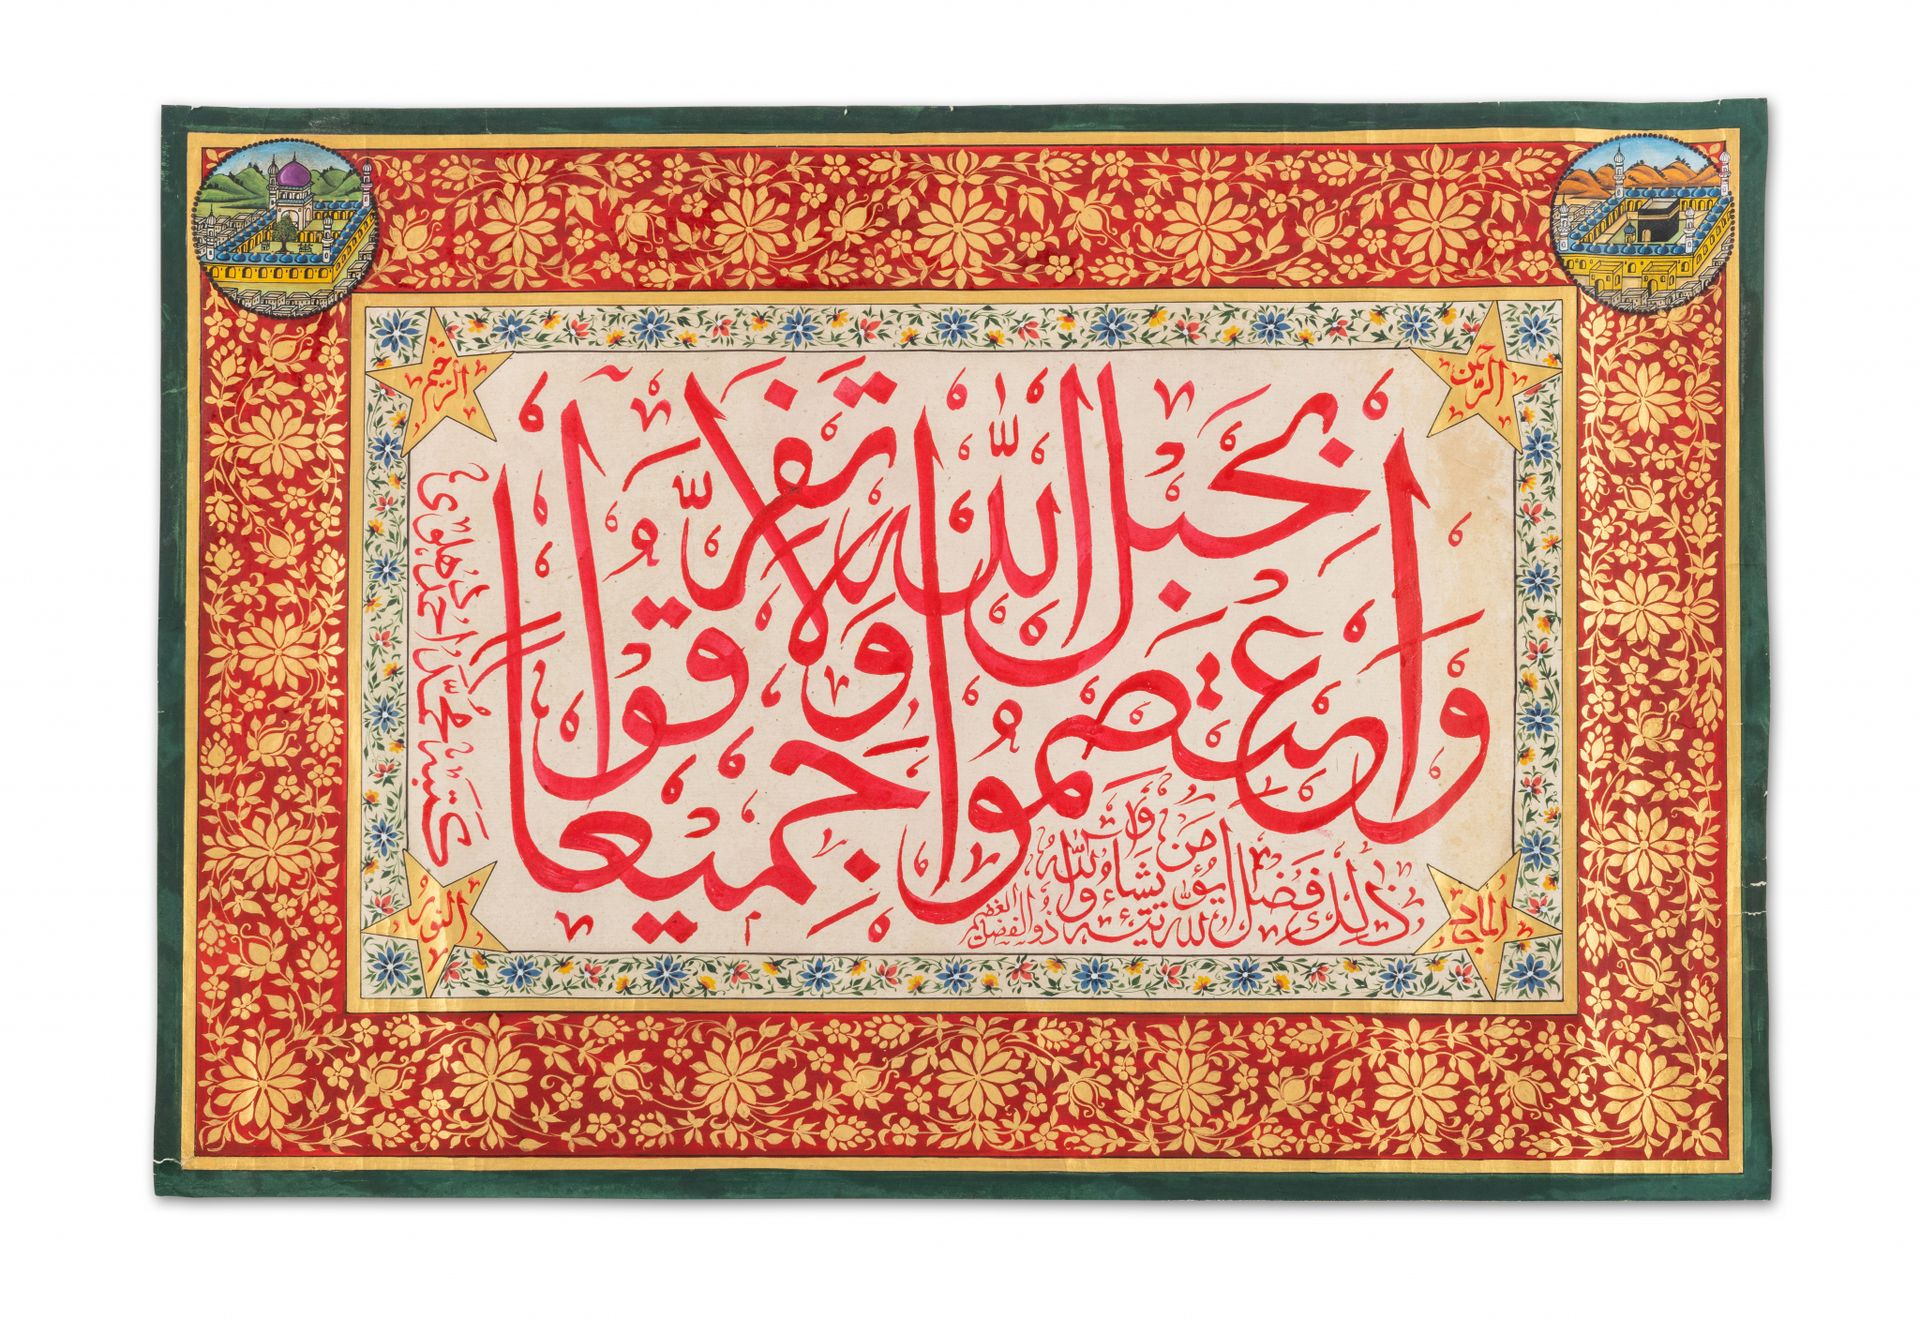 Large calligraphie Indien, kopiert von Muhammad Ahmad ...

Kalligraphie in roter&hellip;